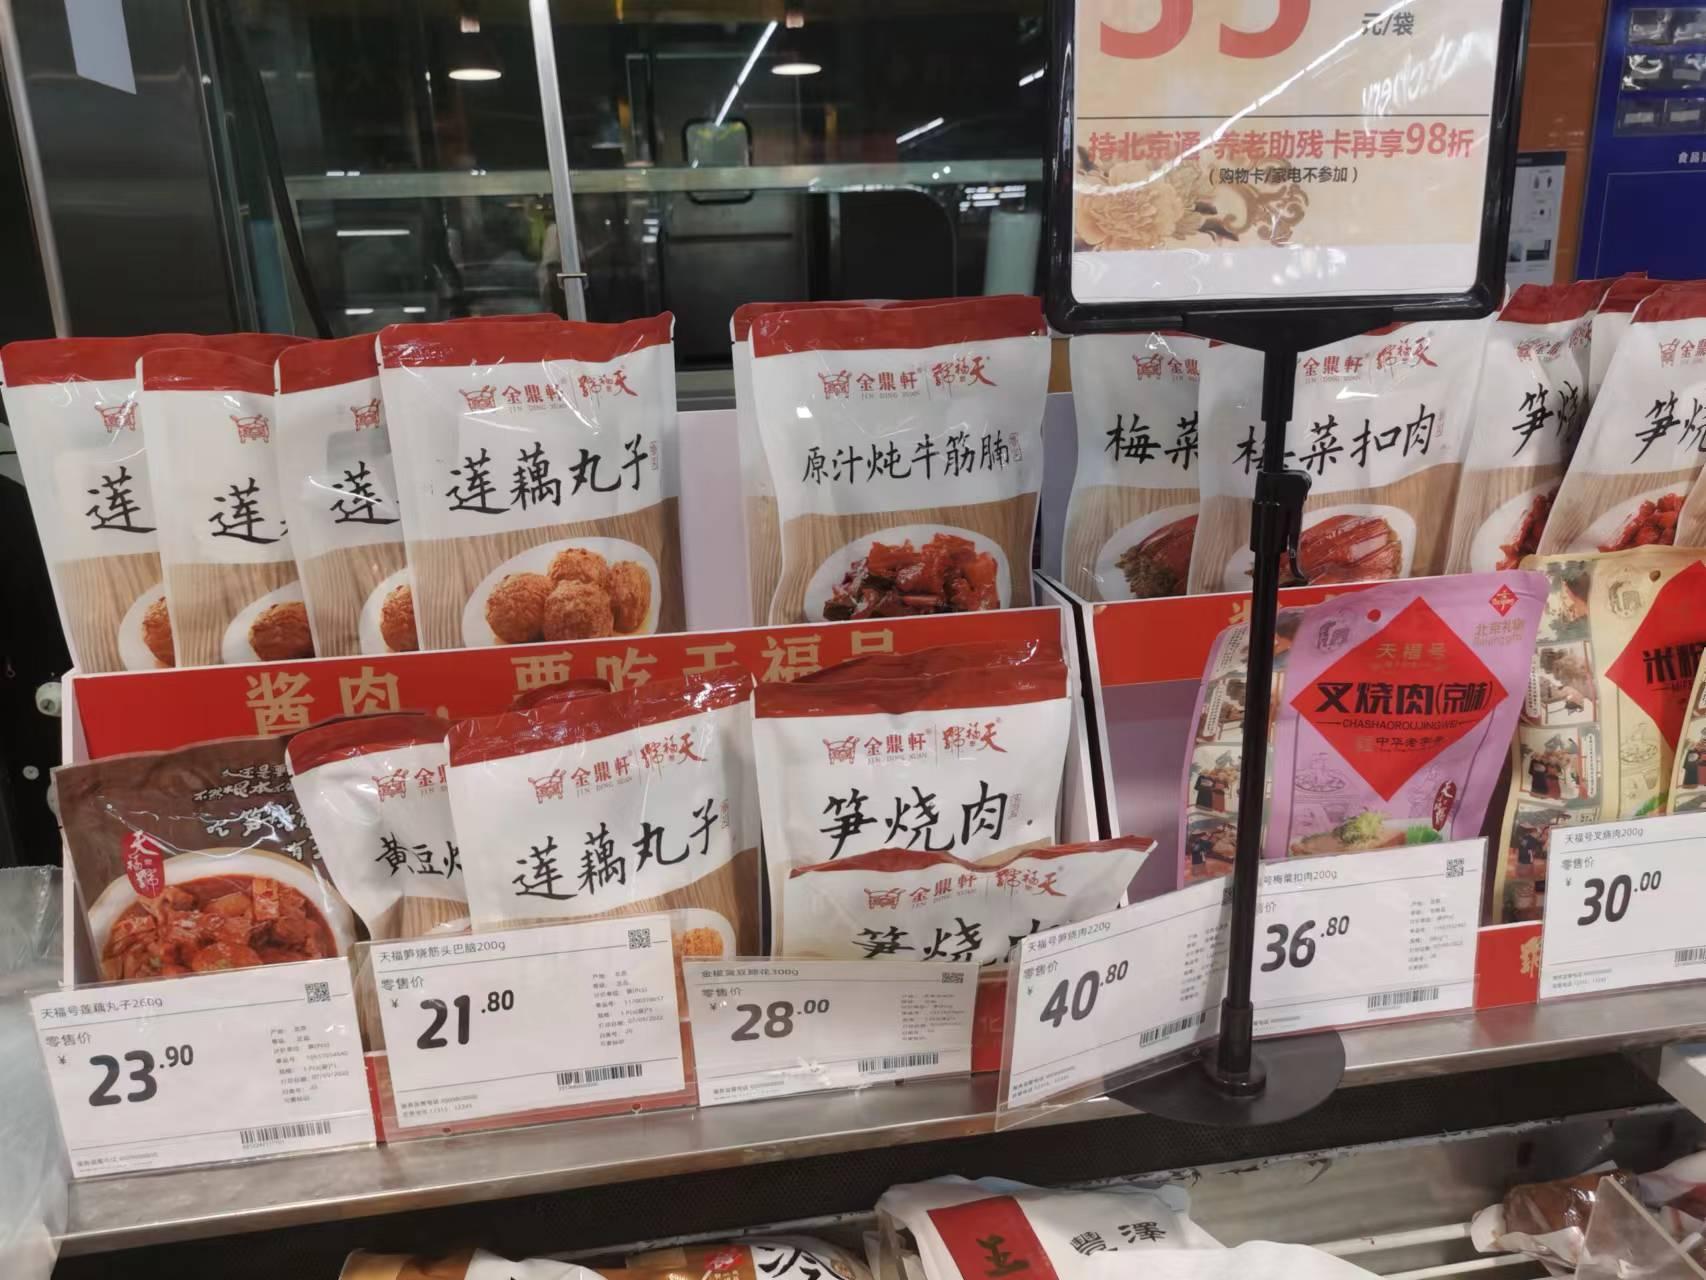 超市中售卖的预制菜产品。  新京报记者 刘欢 摄